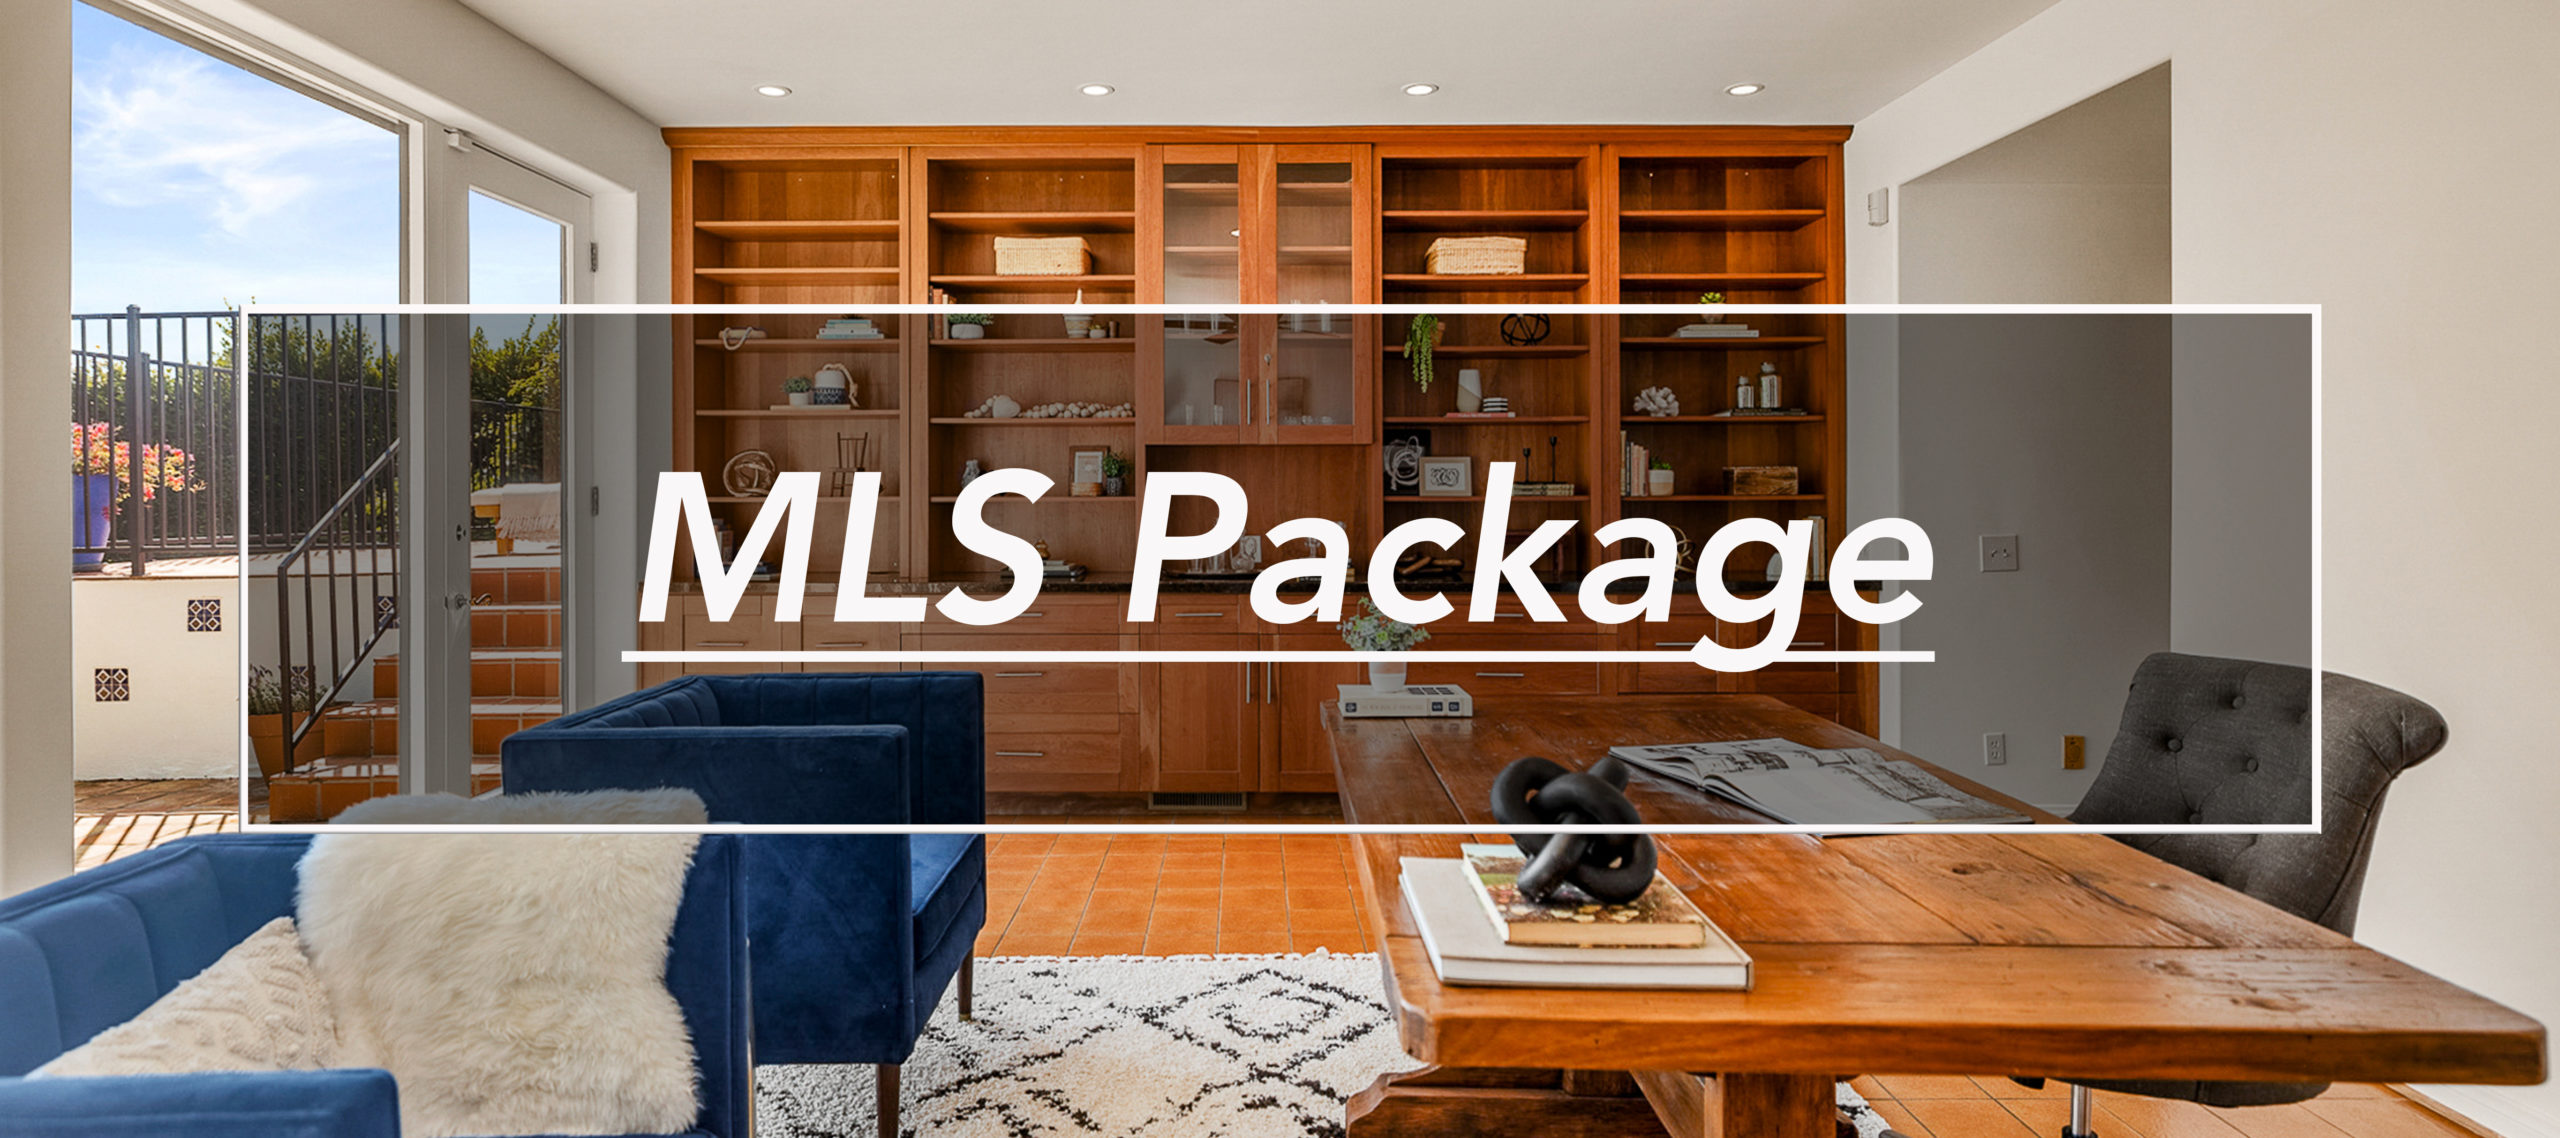 MLS Pack